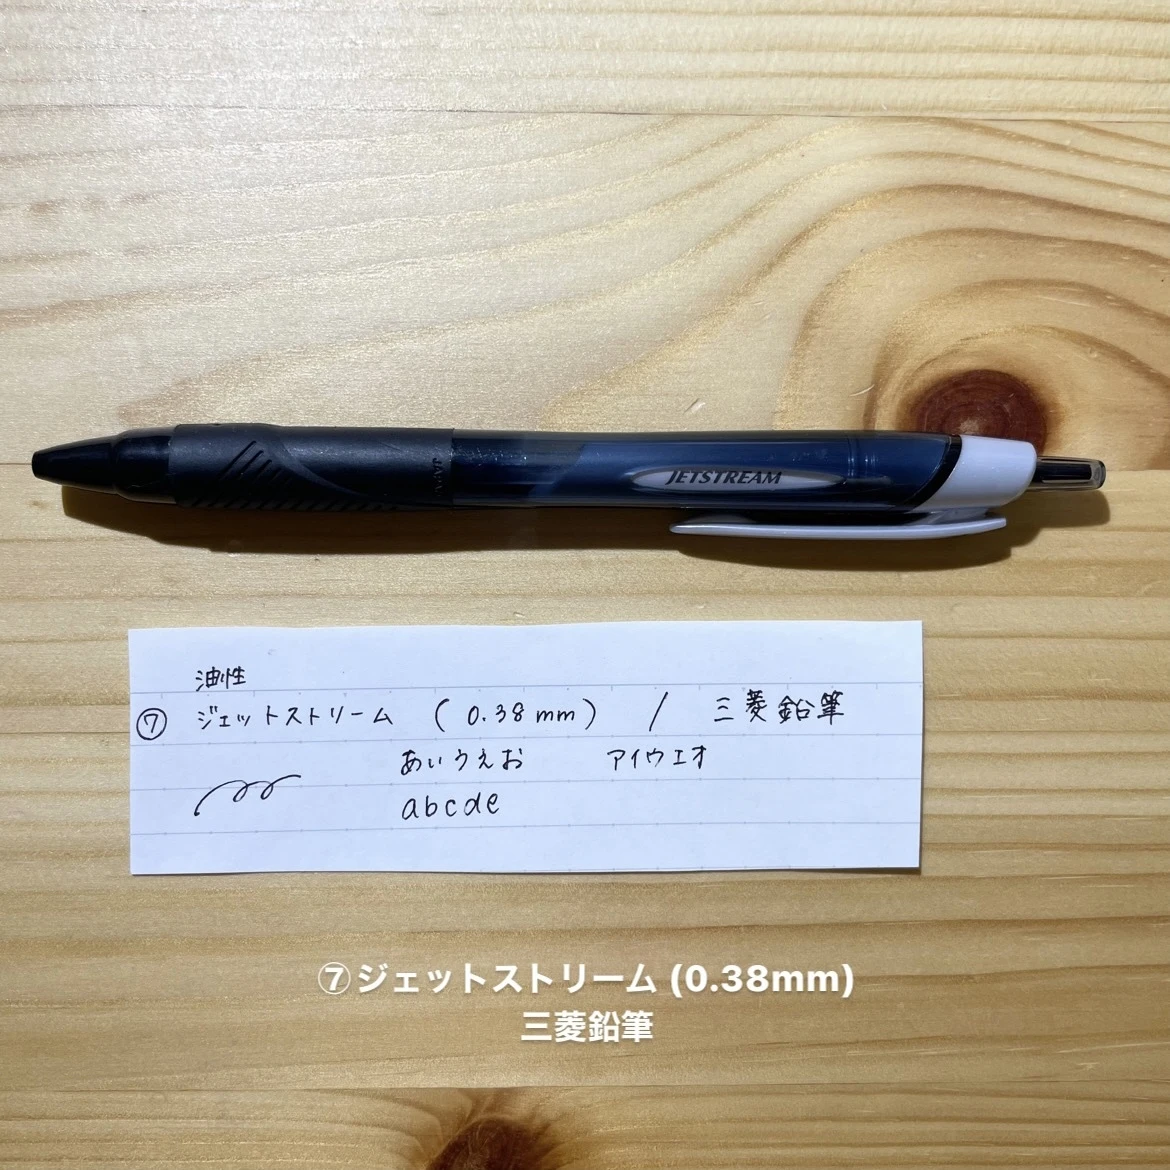 ジェットストリーム(0.38mm)/三菱鉛筆